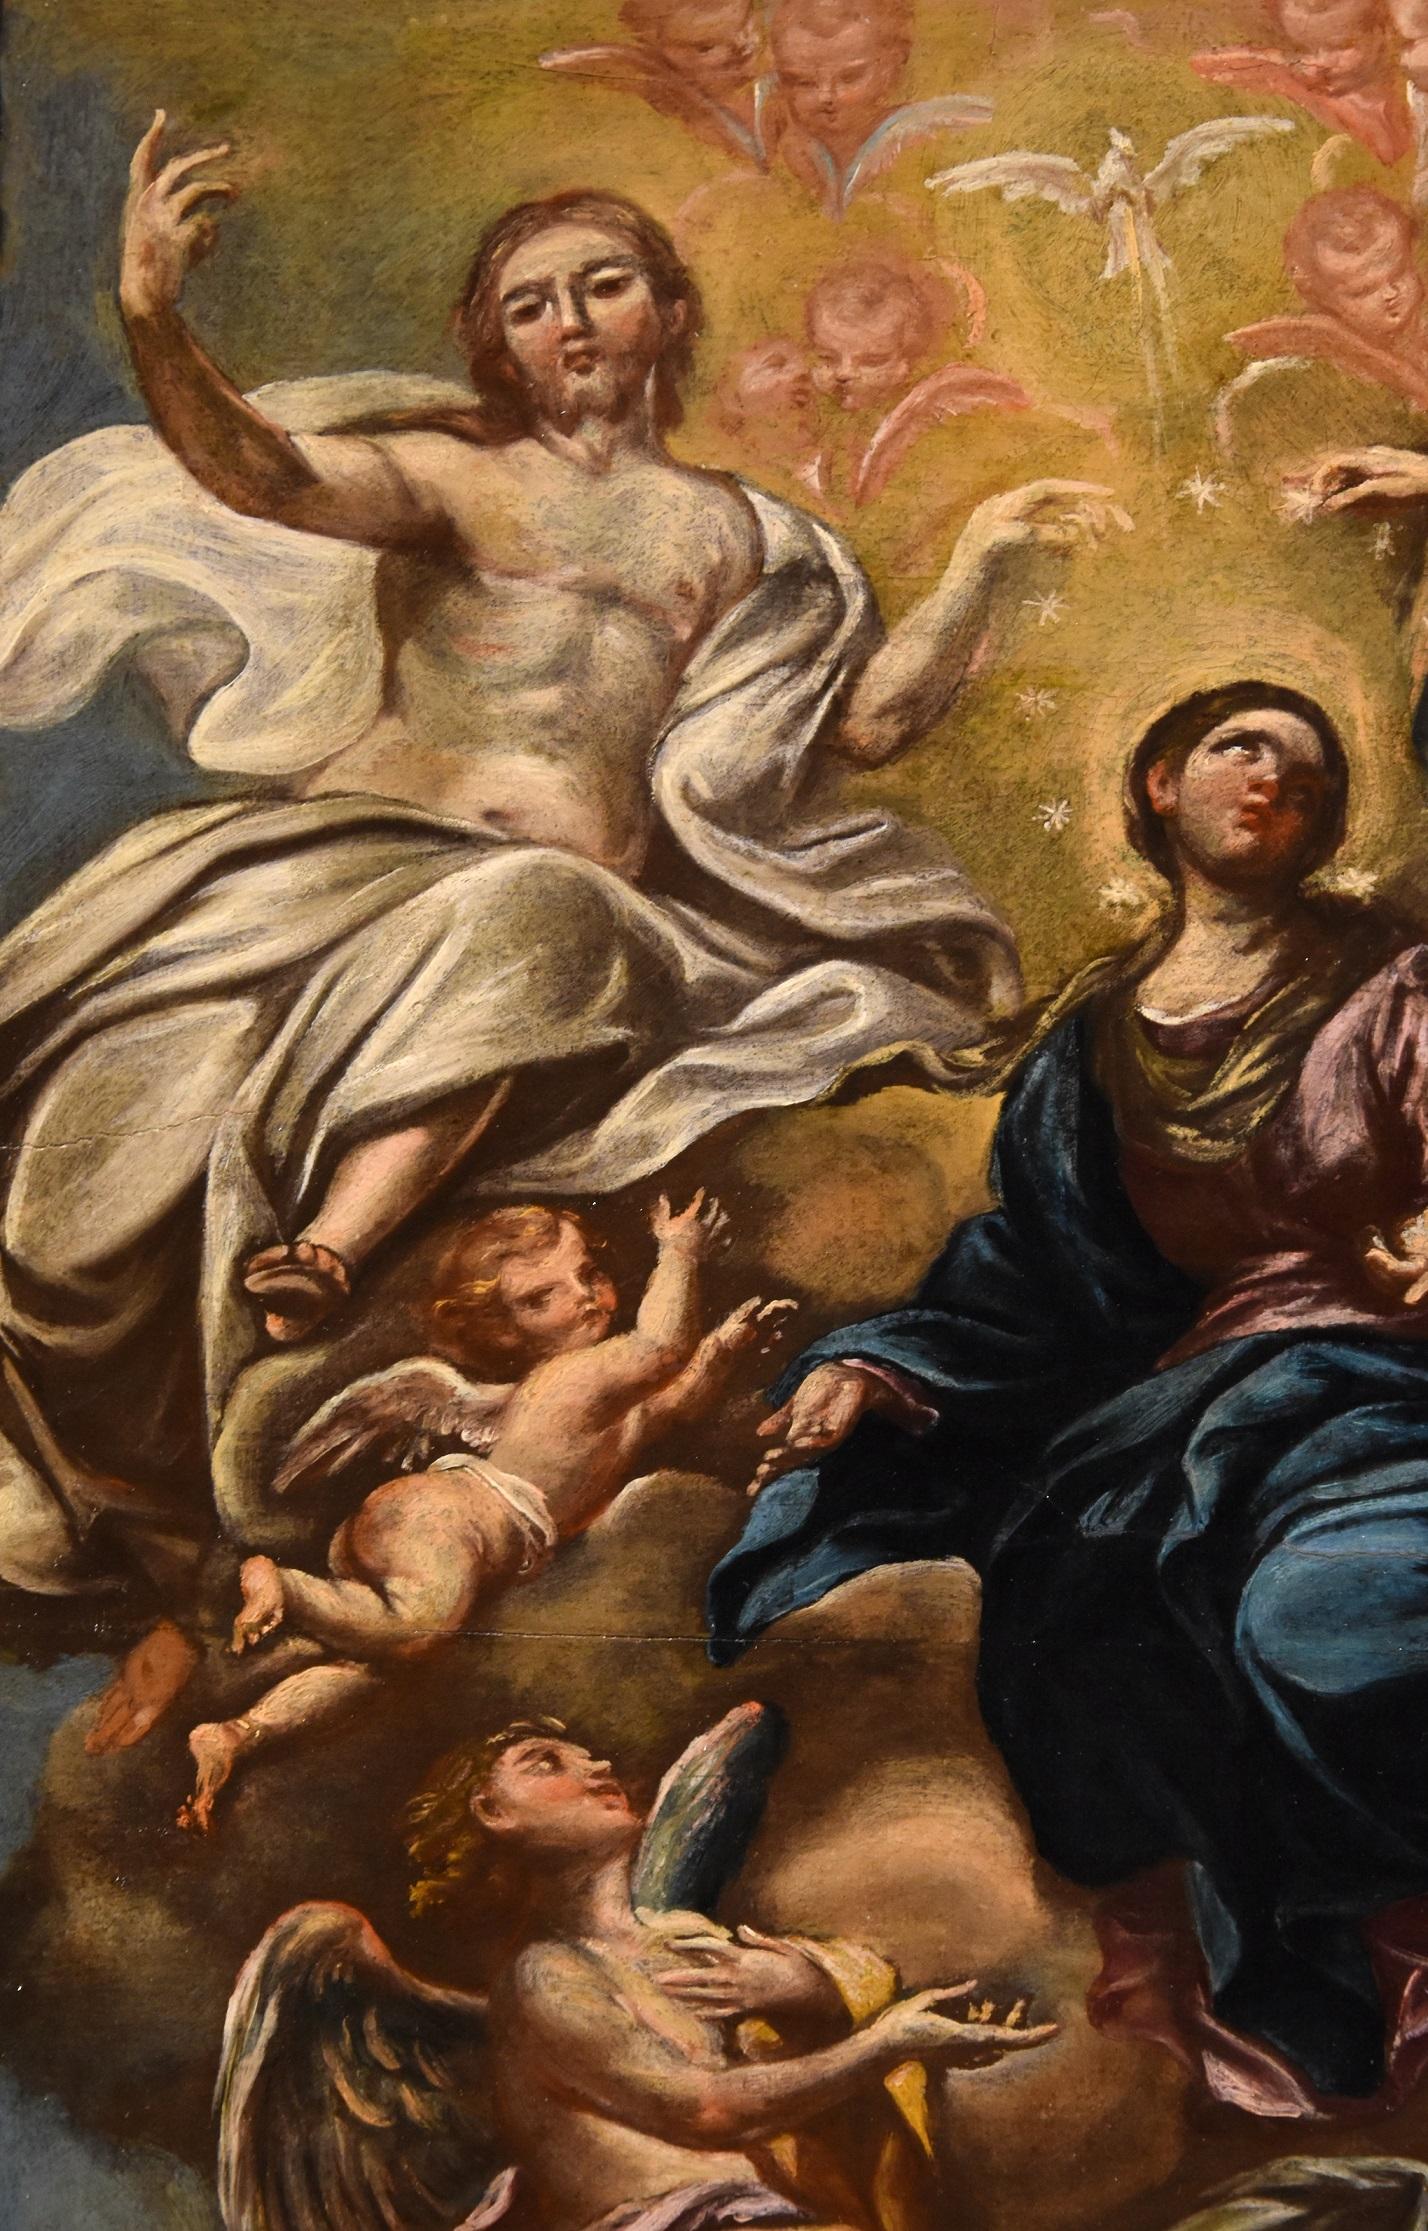 Virgin De Caro Paint Oil on camvas Old master 18th Century Religious Italian Art 1